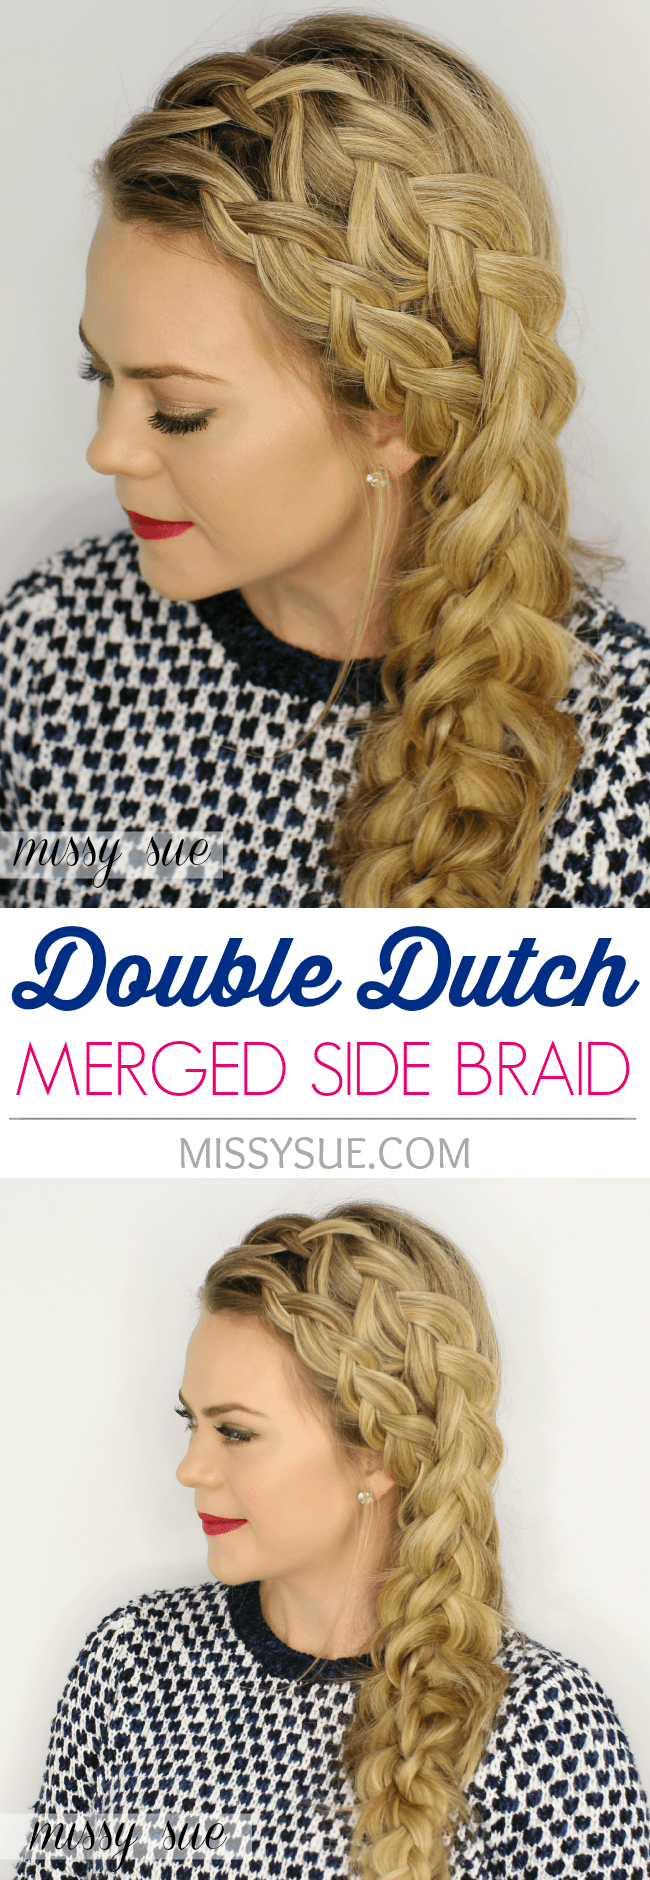 Double Dutch Merged Side Braid